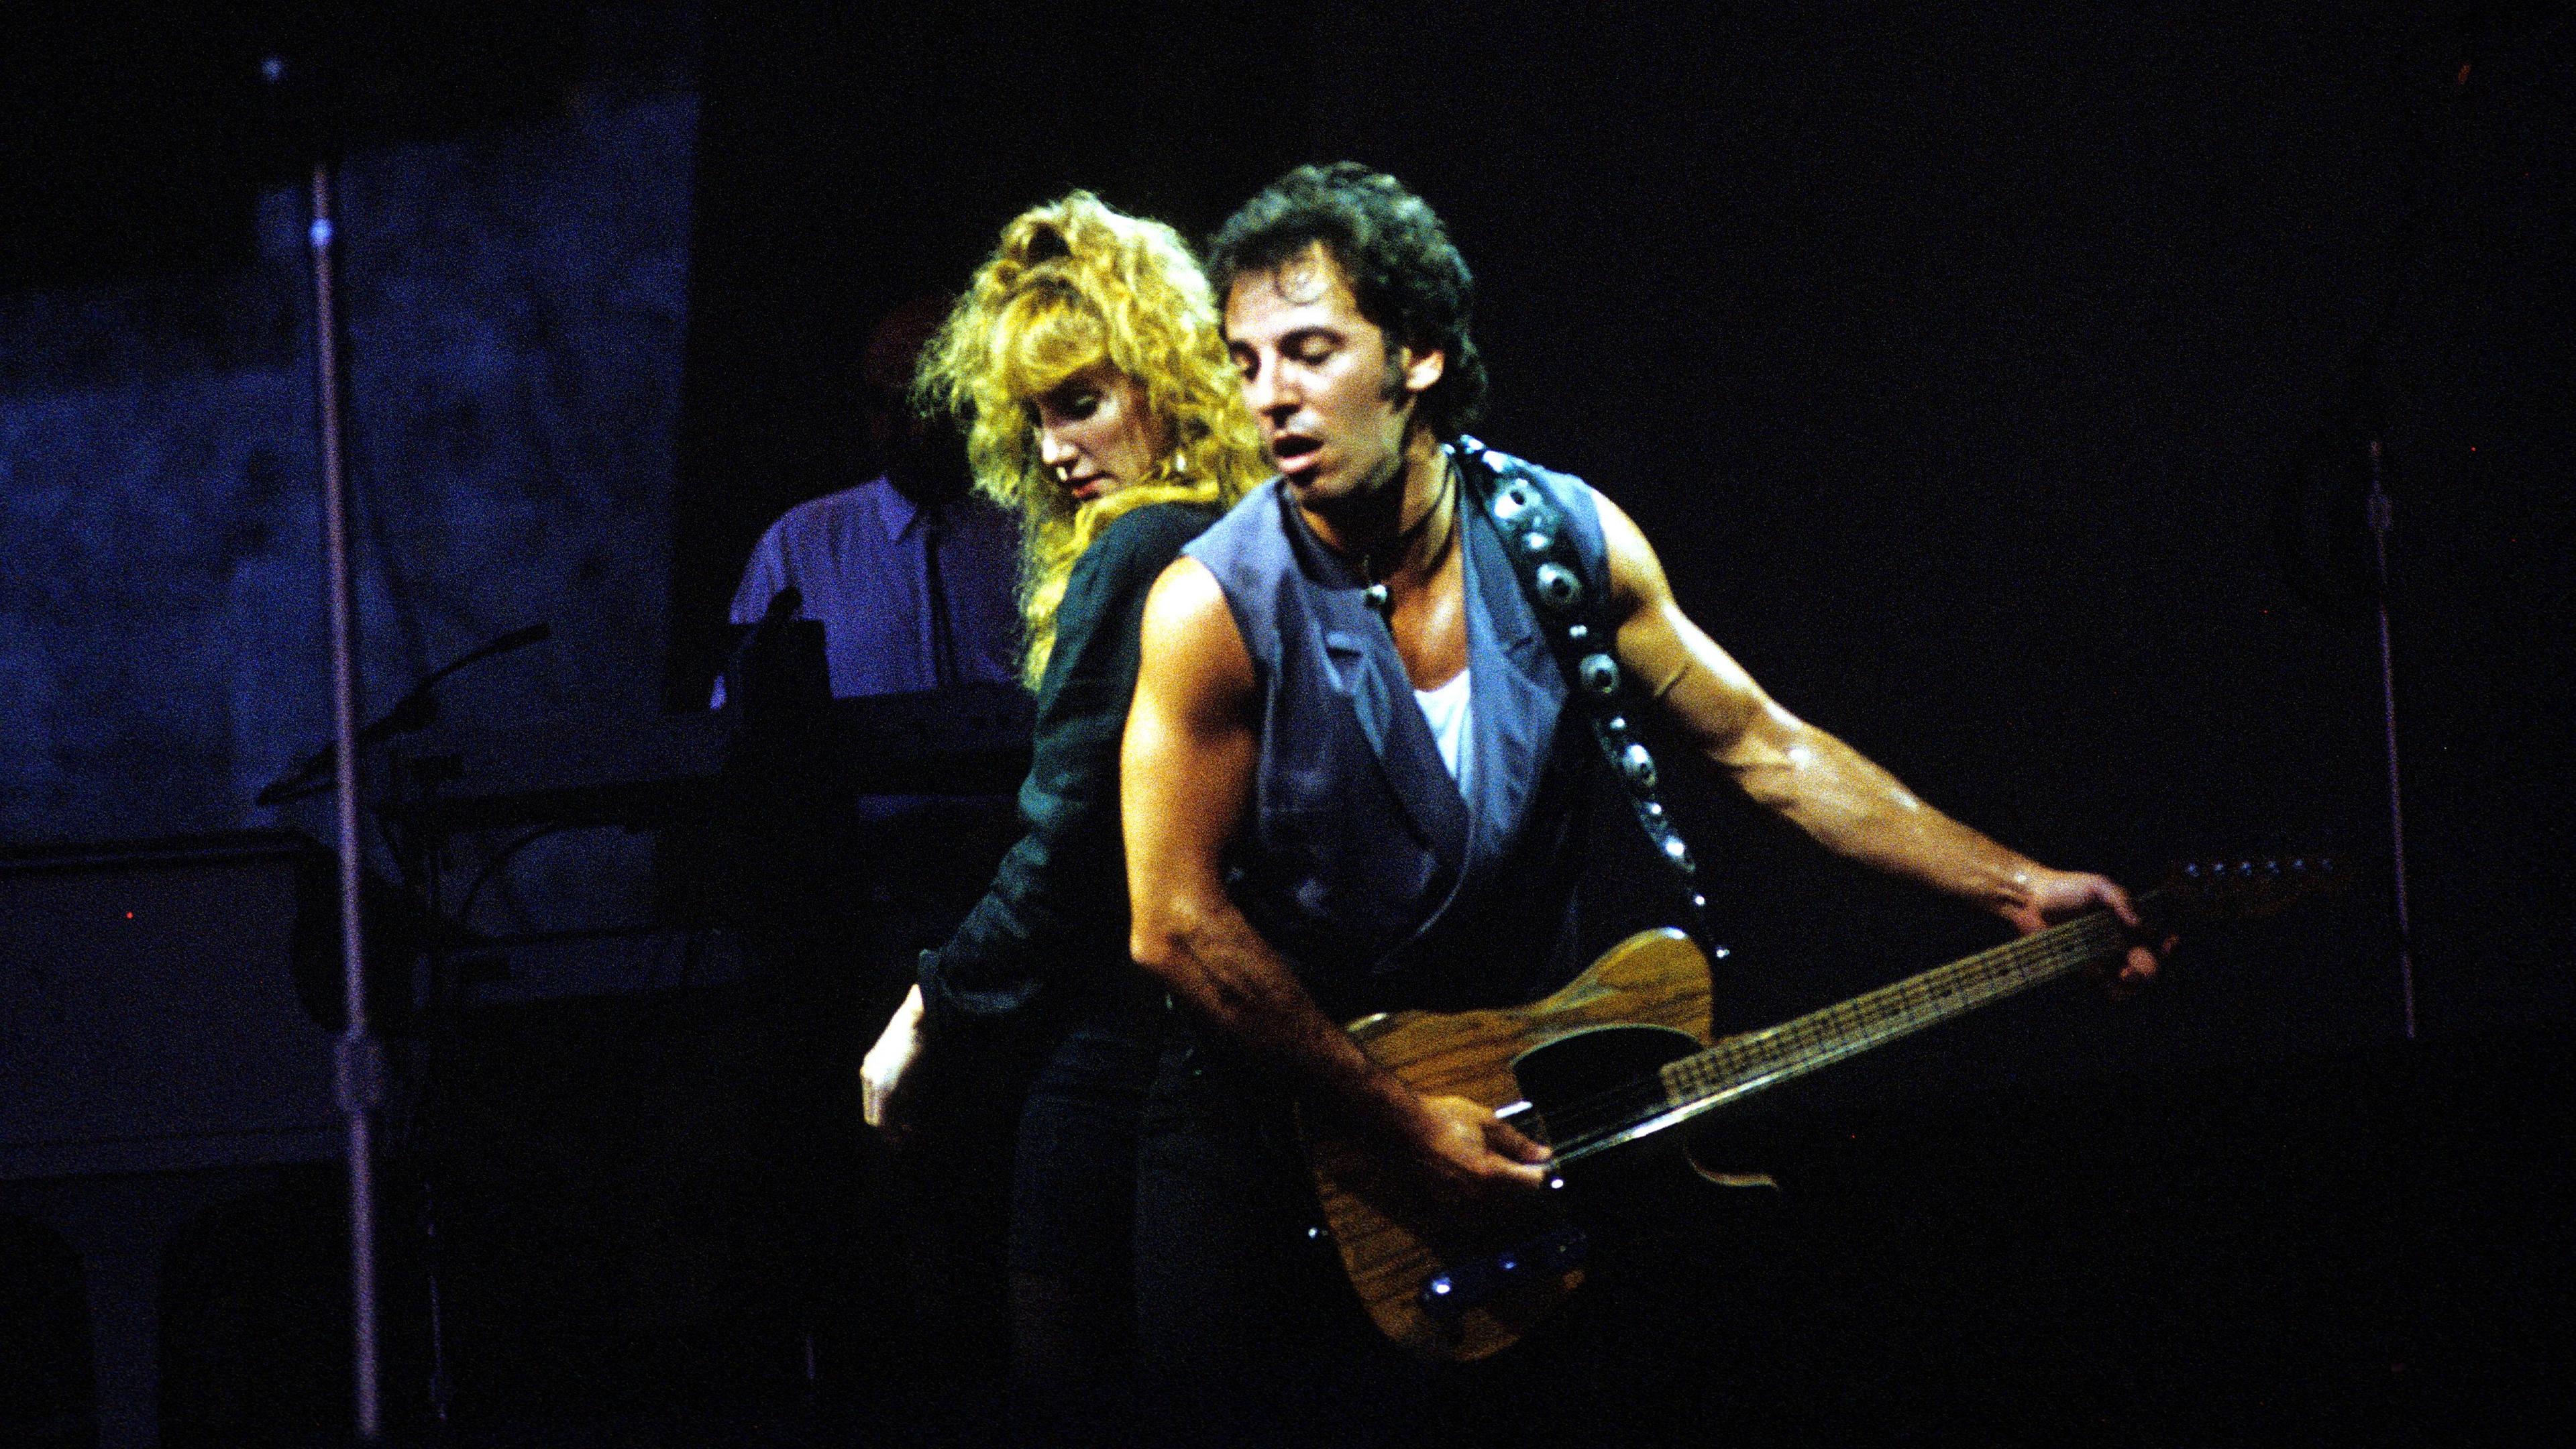 Bruce Springsteen mit Patti Scialfa (seiner späteren Frau) während eines Konzerts in Berlin Weißensee (1988)